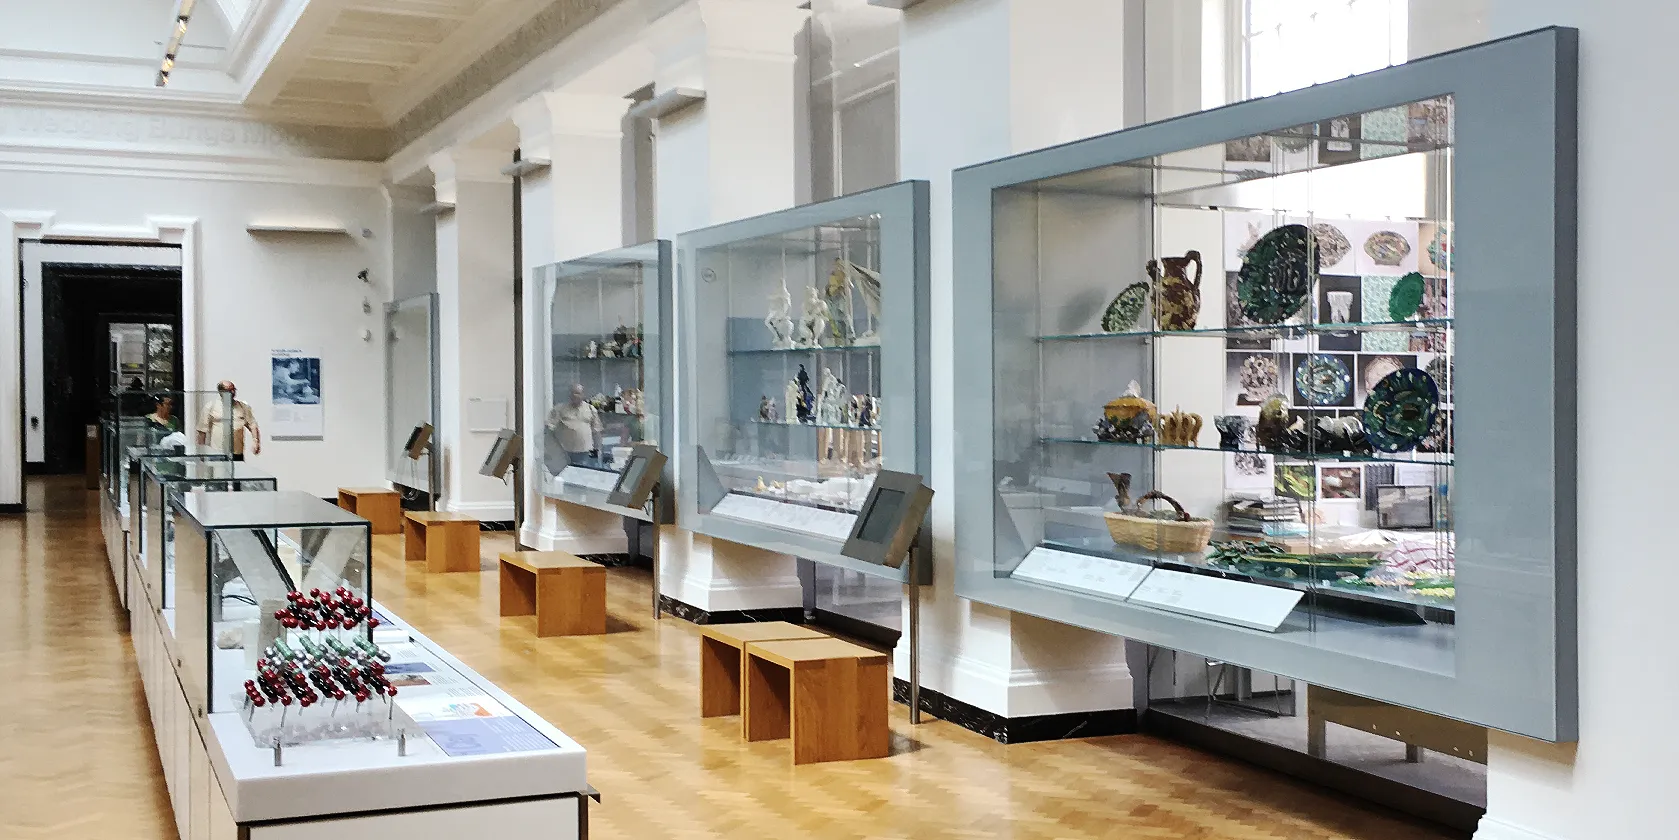 Victoria & Albert Museum Ceramics Gallery